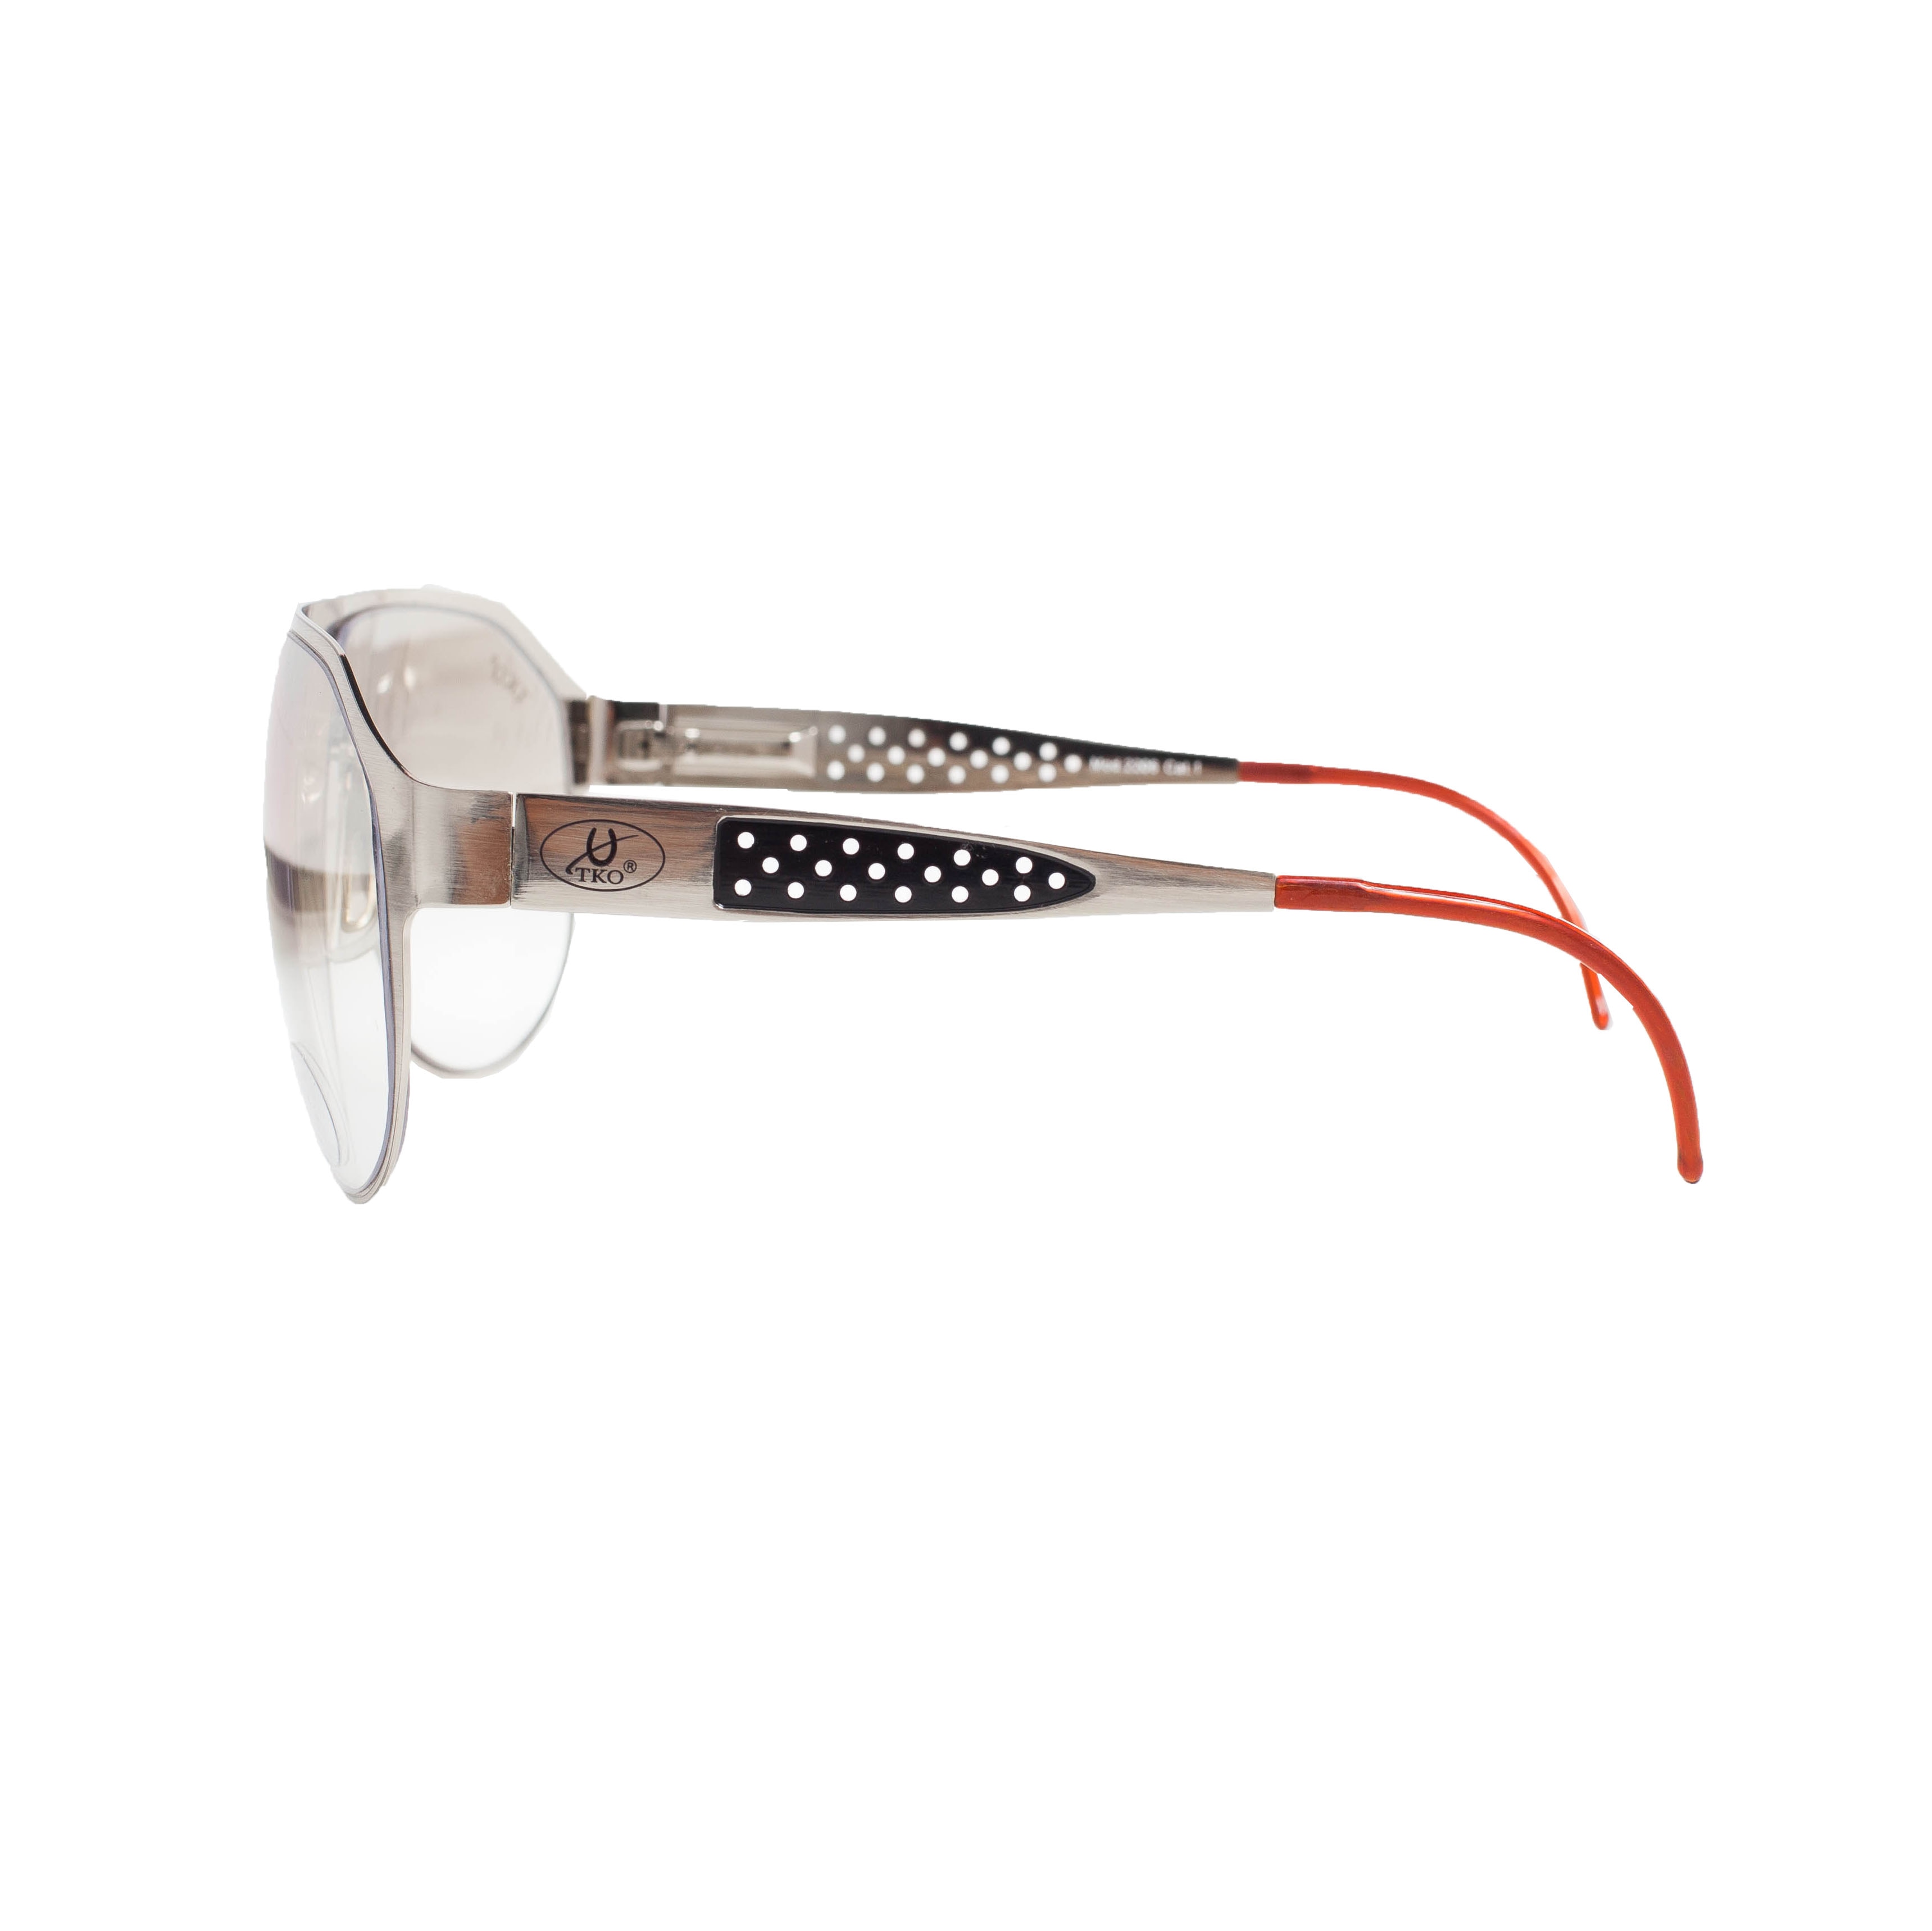 TKO - Harness løbsbriller - model California